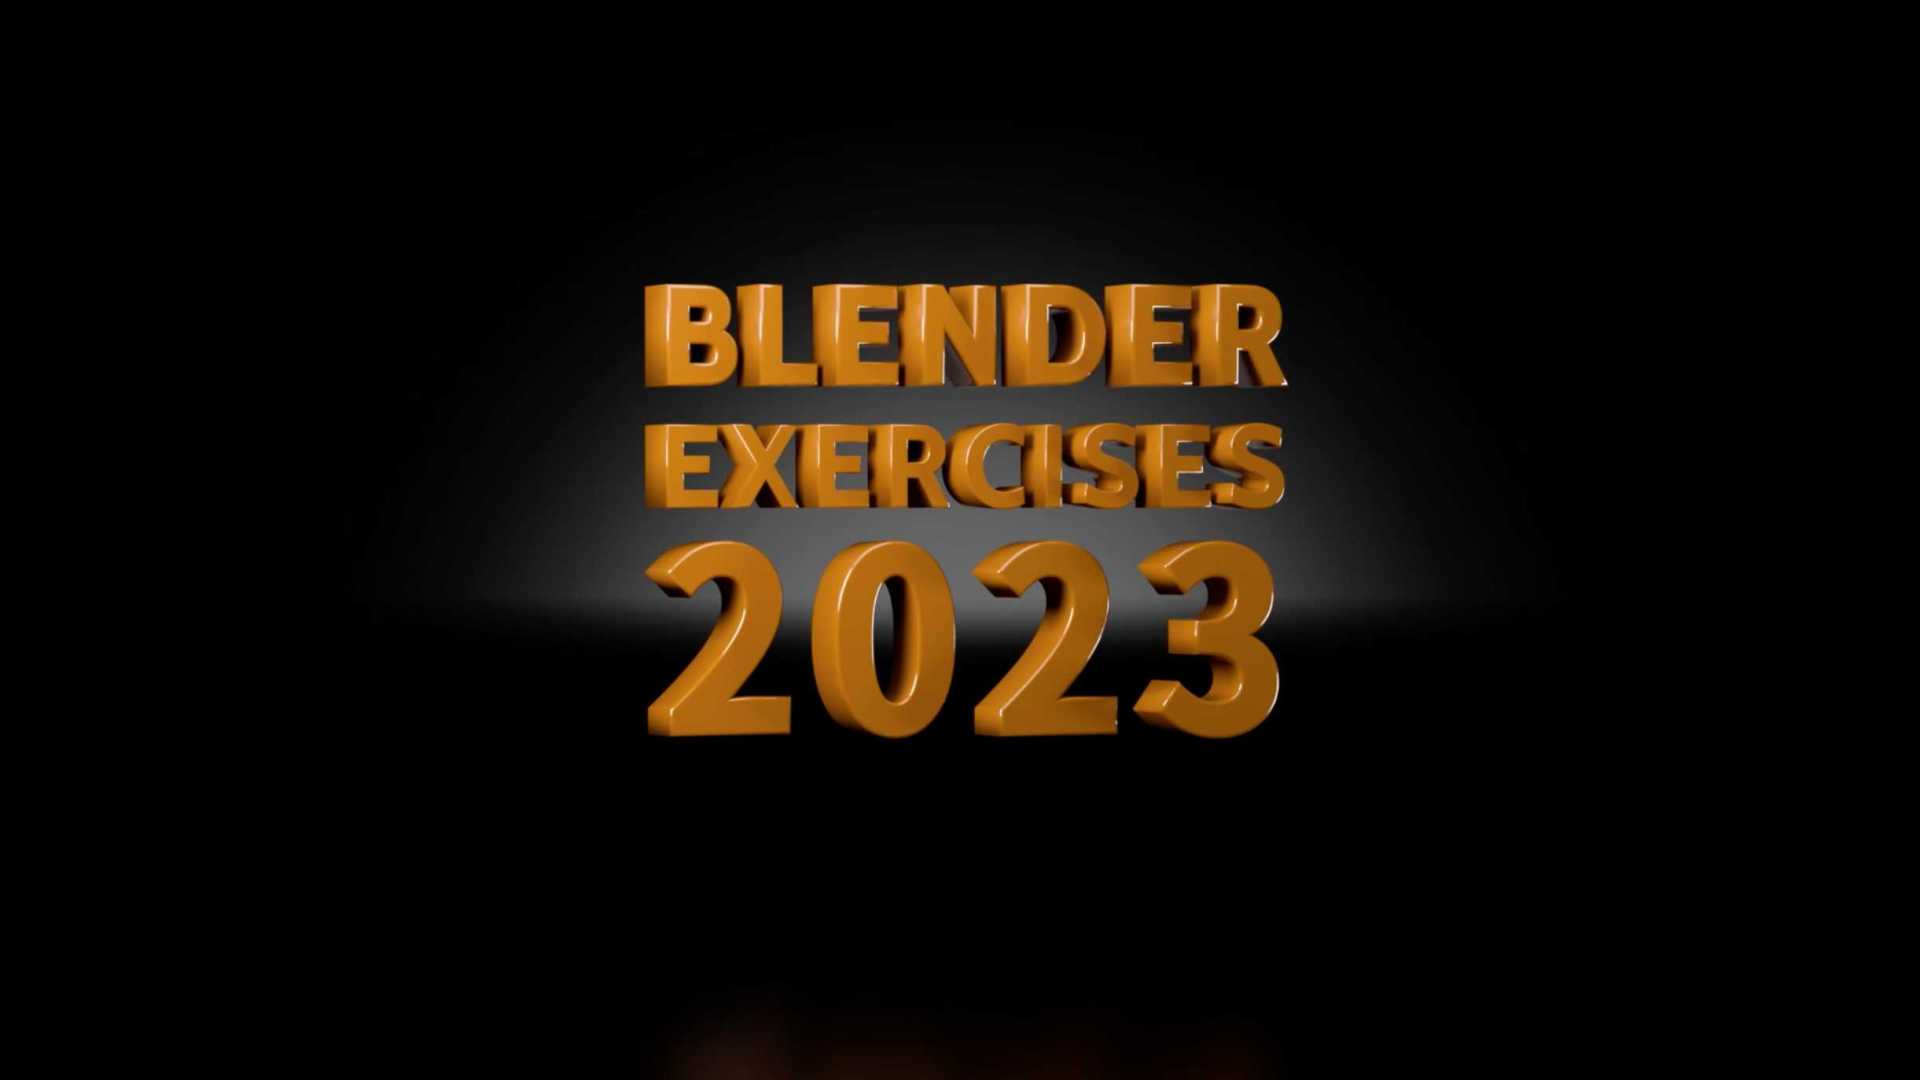 Blender exercises 2023